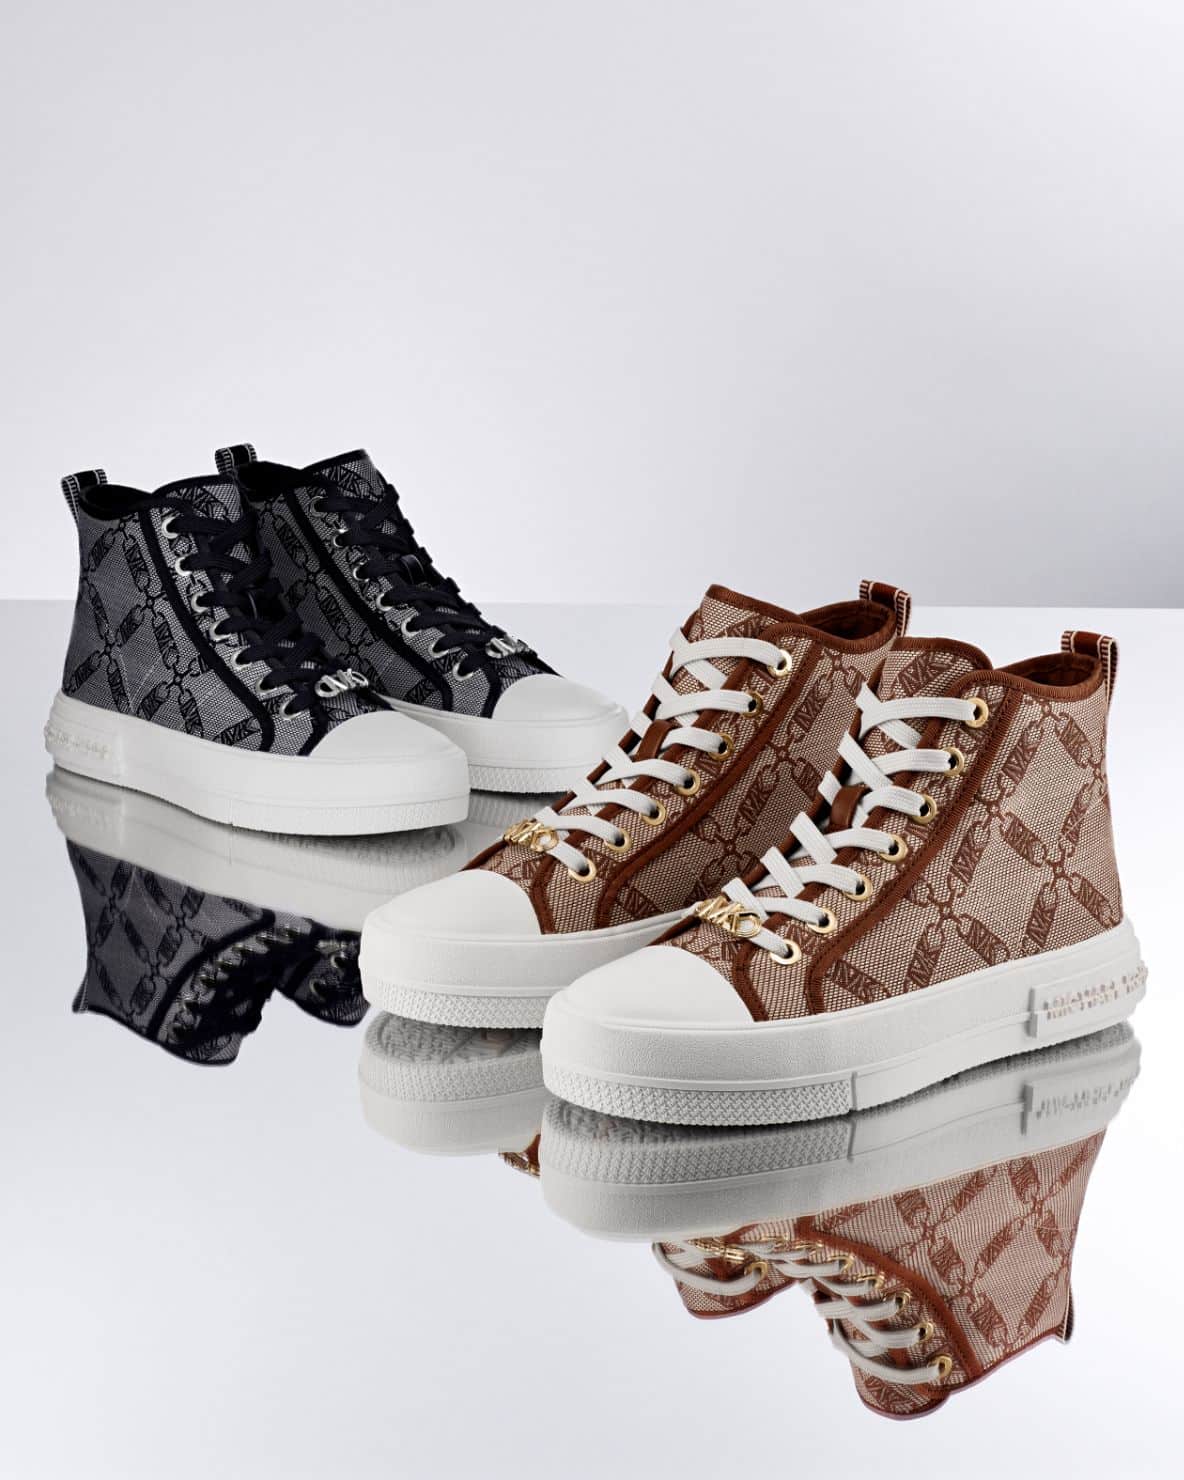 Designer Shoes For Women | Michael Kors